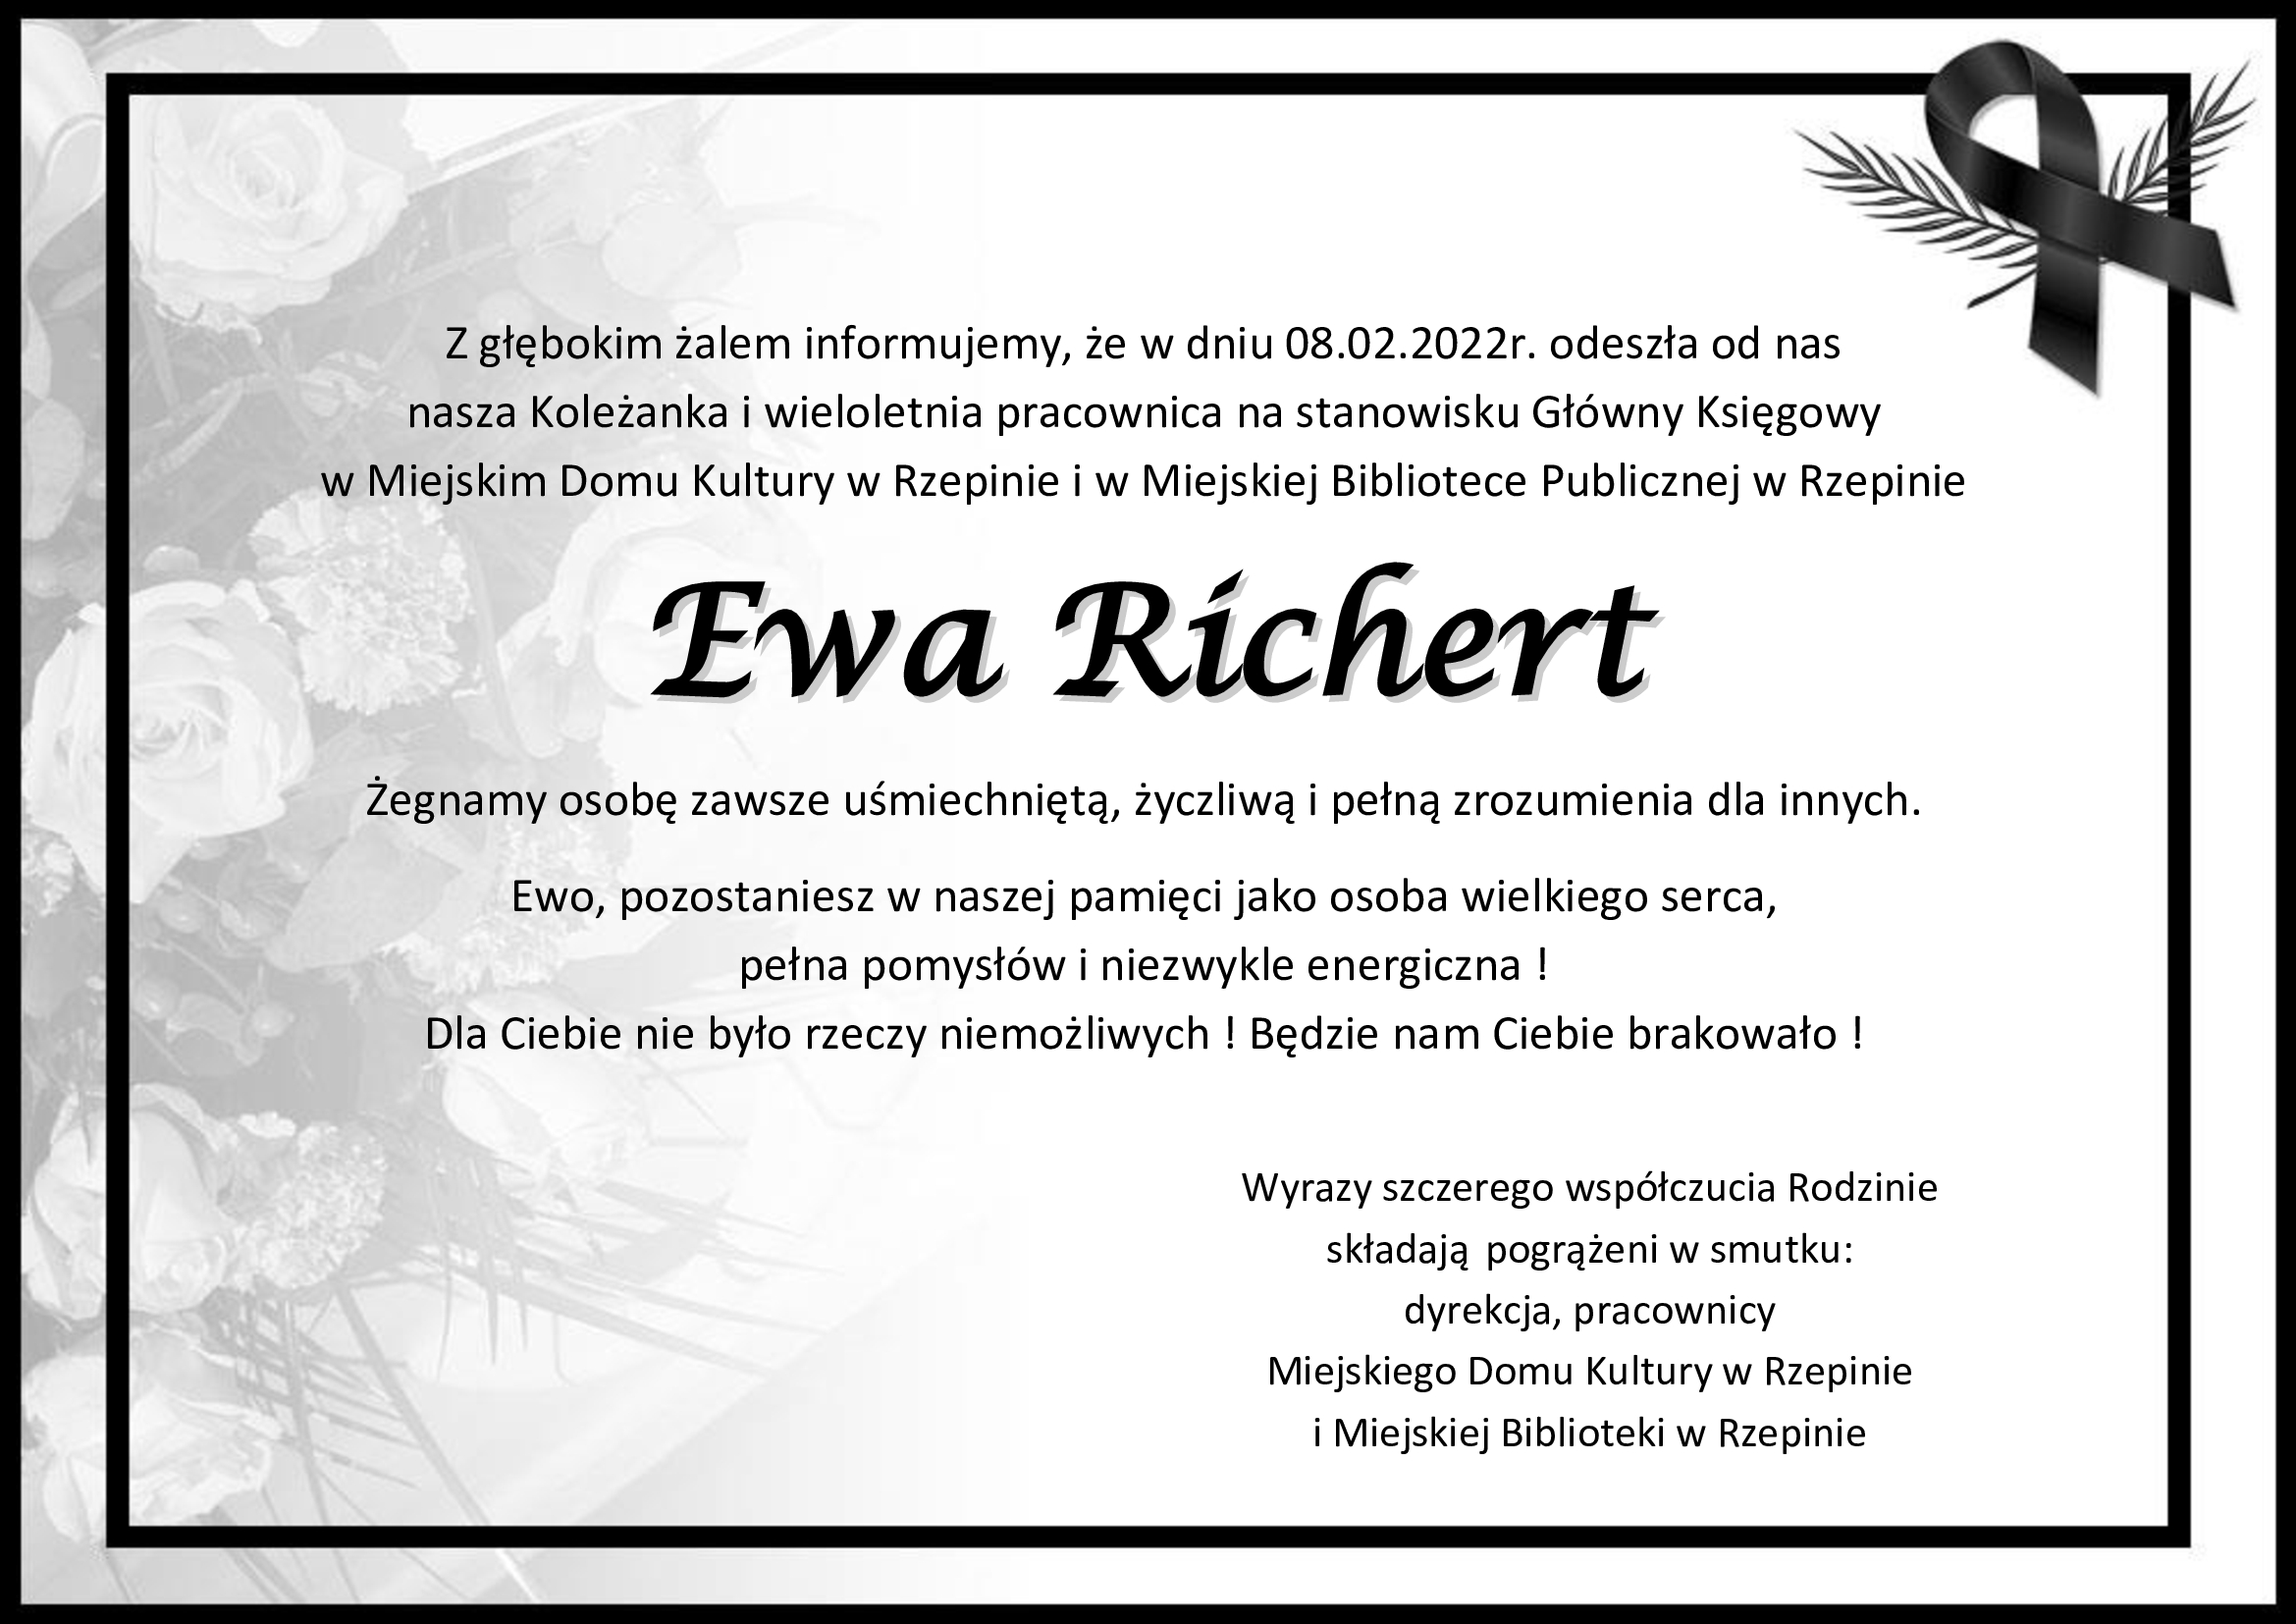 Informujemy, że 8 lutego 2022r, odeszła od nas p. Ewa Richert, nasza koleżanka i wieloletnia pracownica na stanowisku Główny ksiegowy w Miejskim Domu Lulturyw w Rzepinie i w miejskiej Bibliotece w Rzepinie